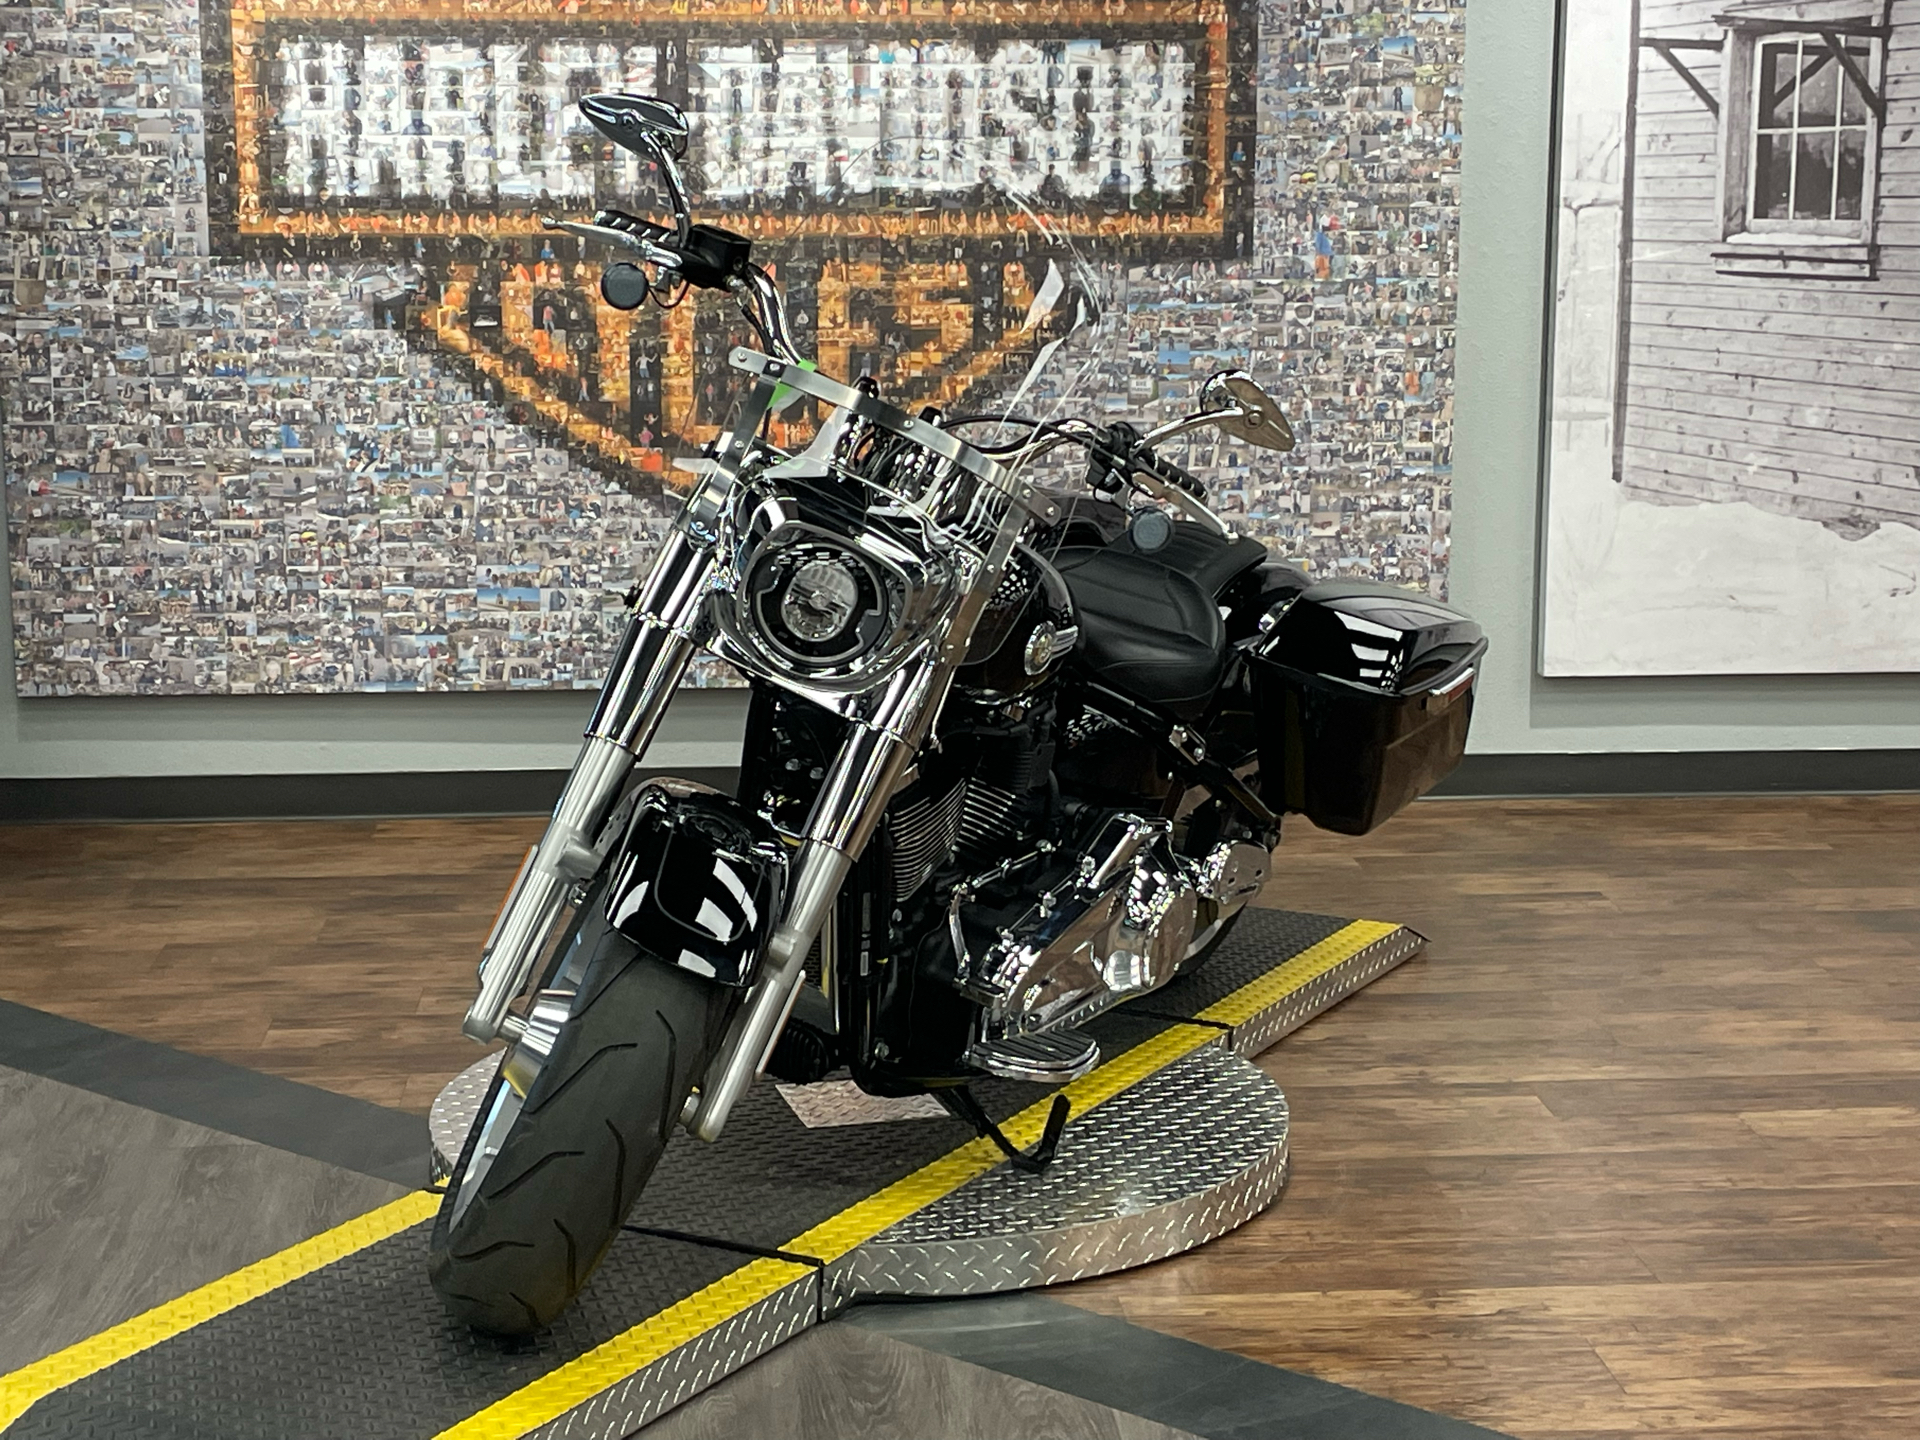 2022 Harley-Davidson Fat Boy® 114 in Greeley, Colorado - Photo 3